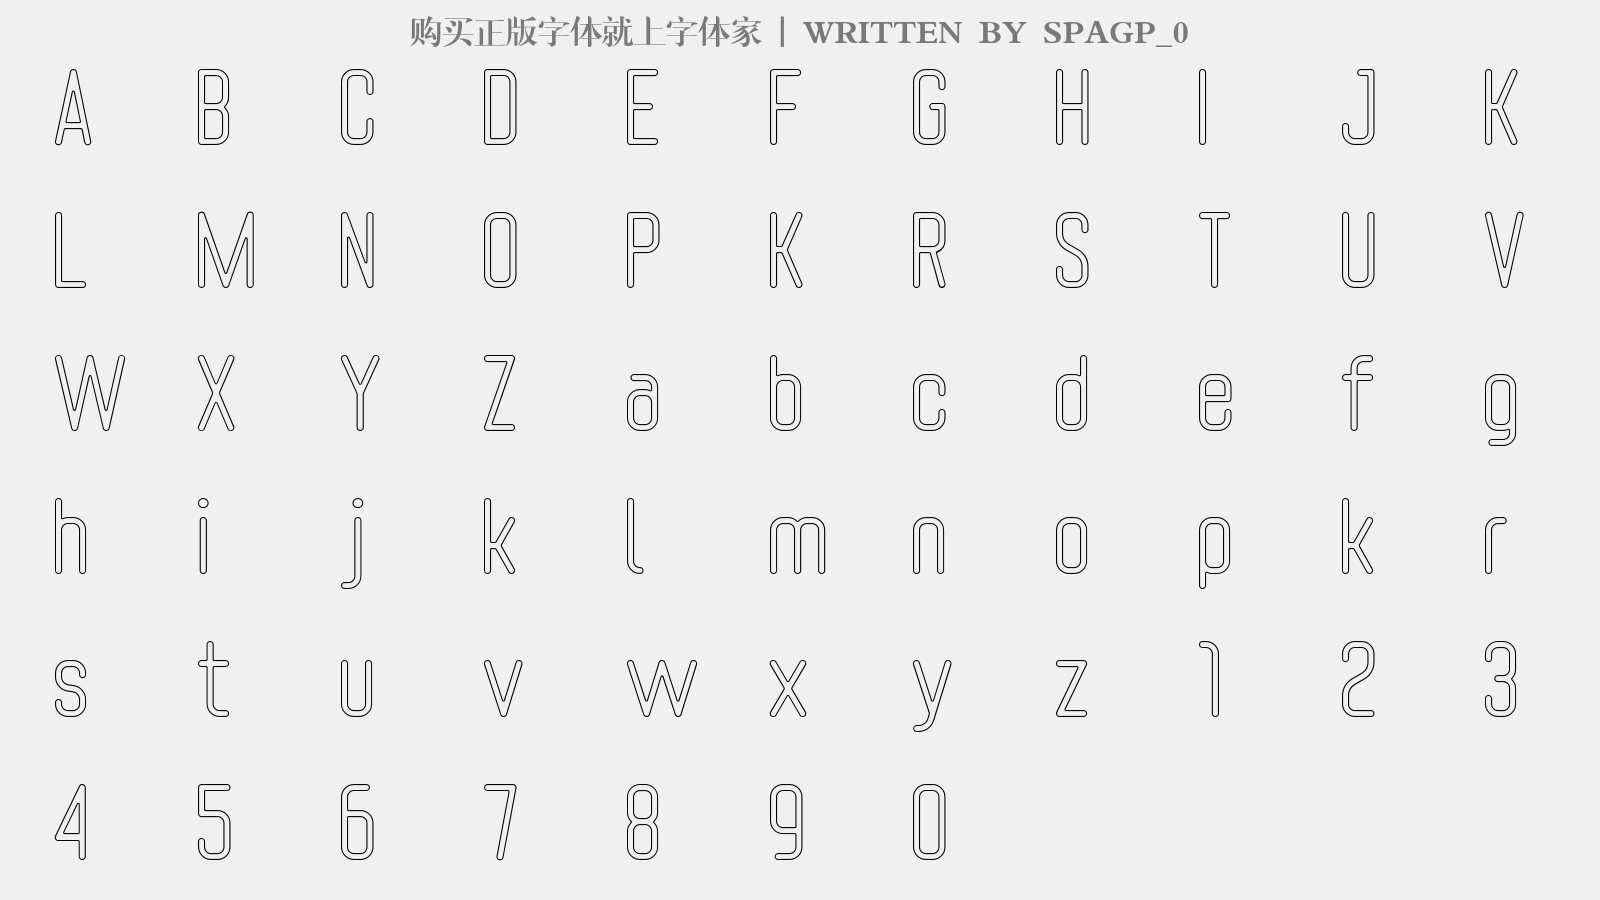 SPAGP_0 - 大写字母/小写字母/数字